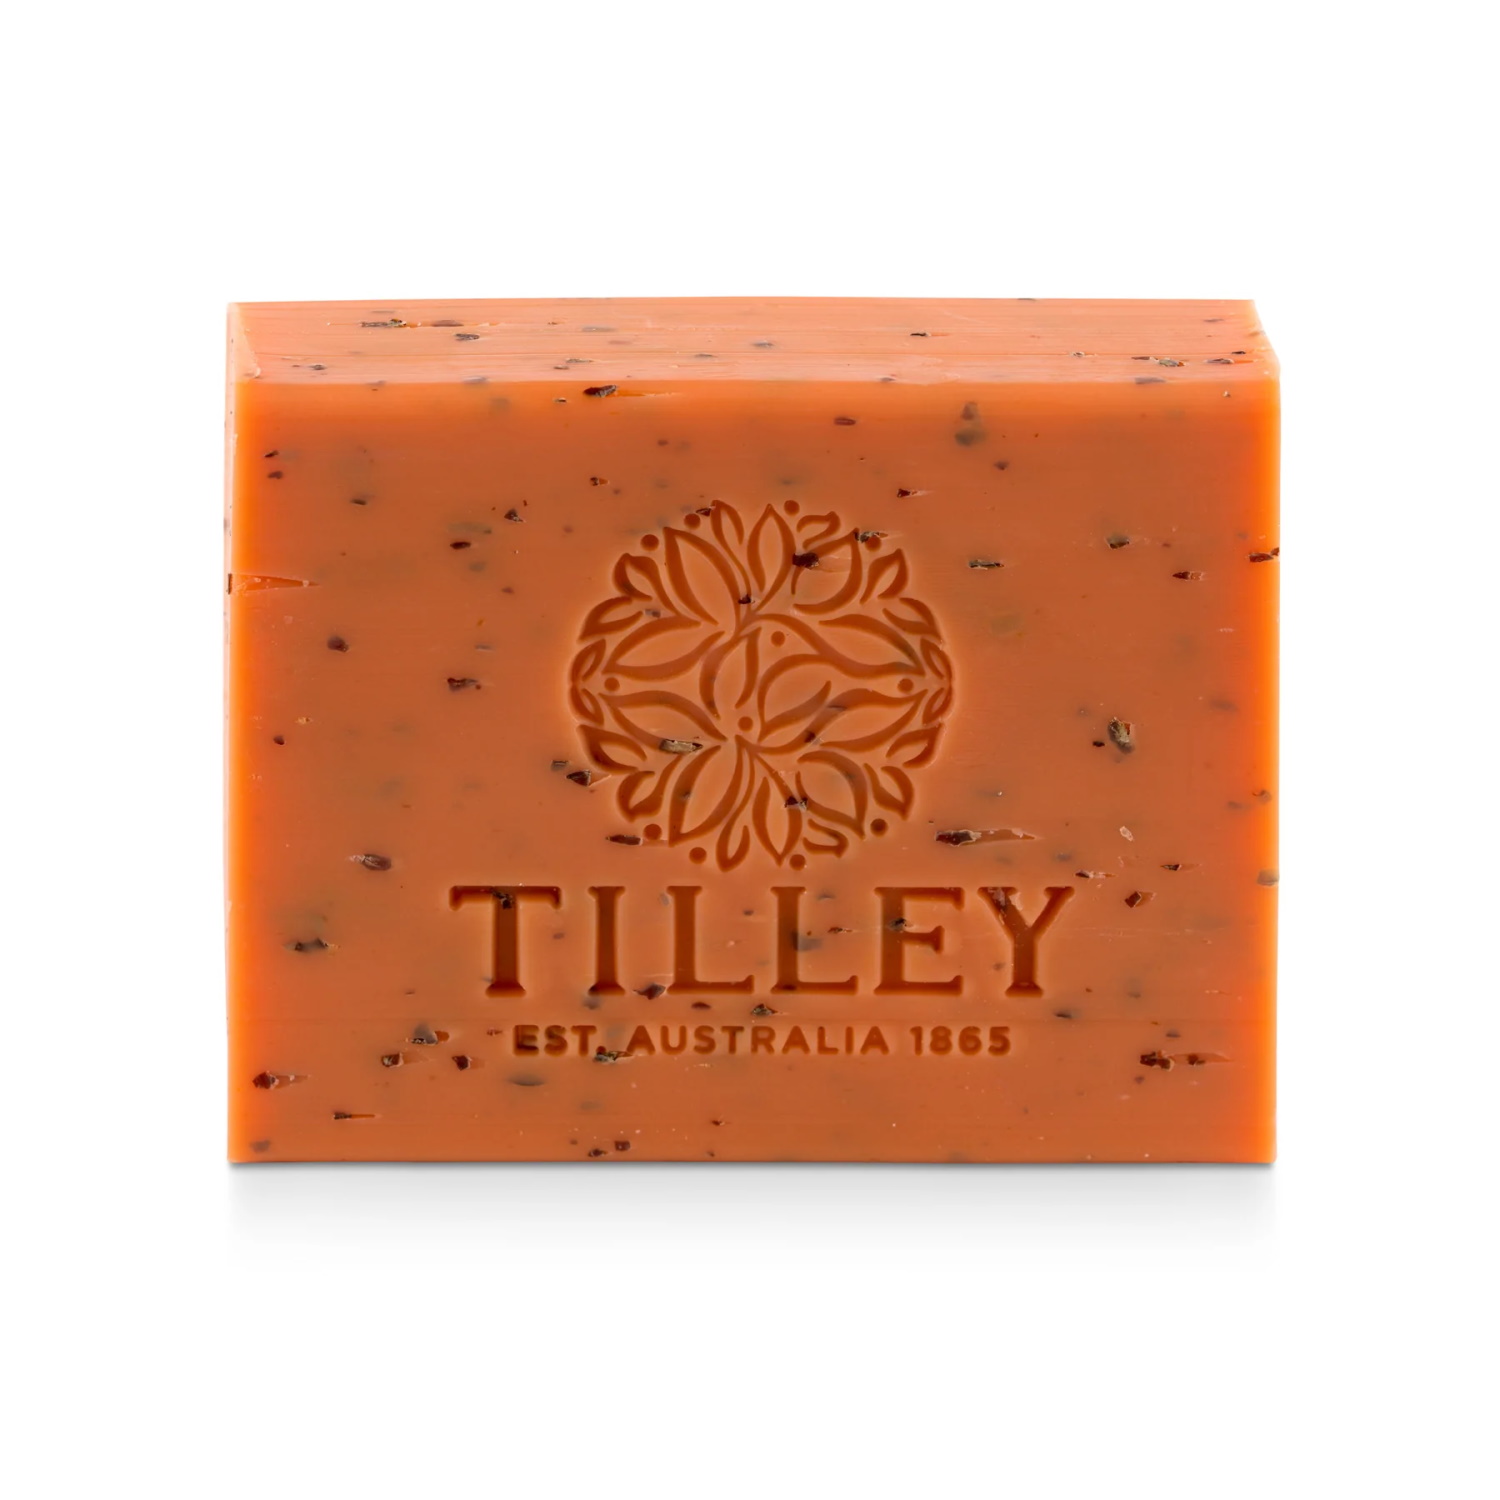 Tilley Classic White Soap 100G Sandalwood & Bergamot